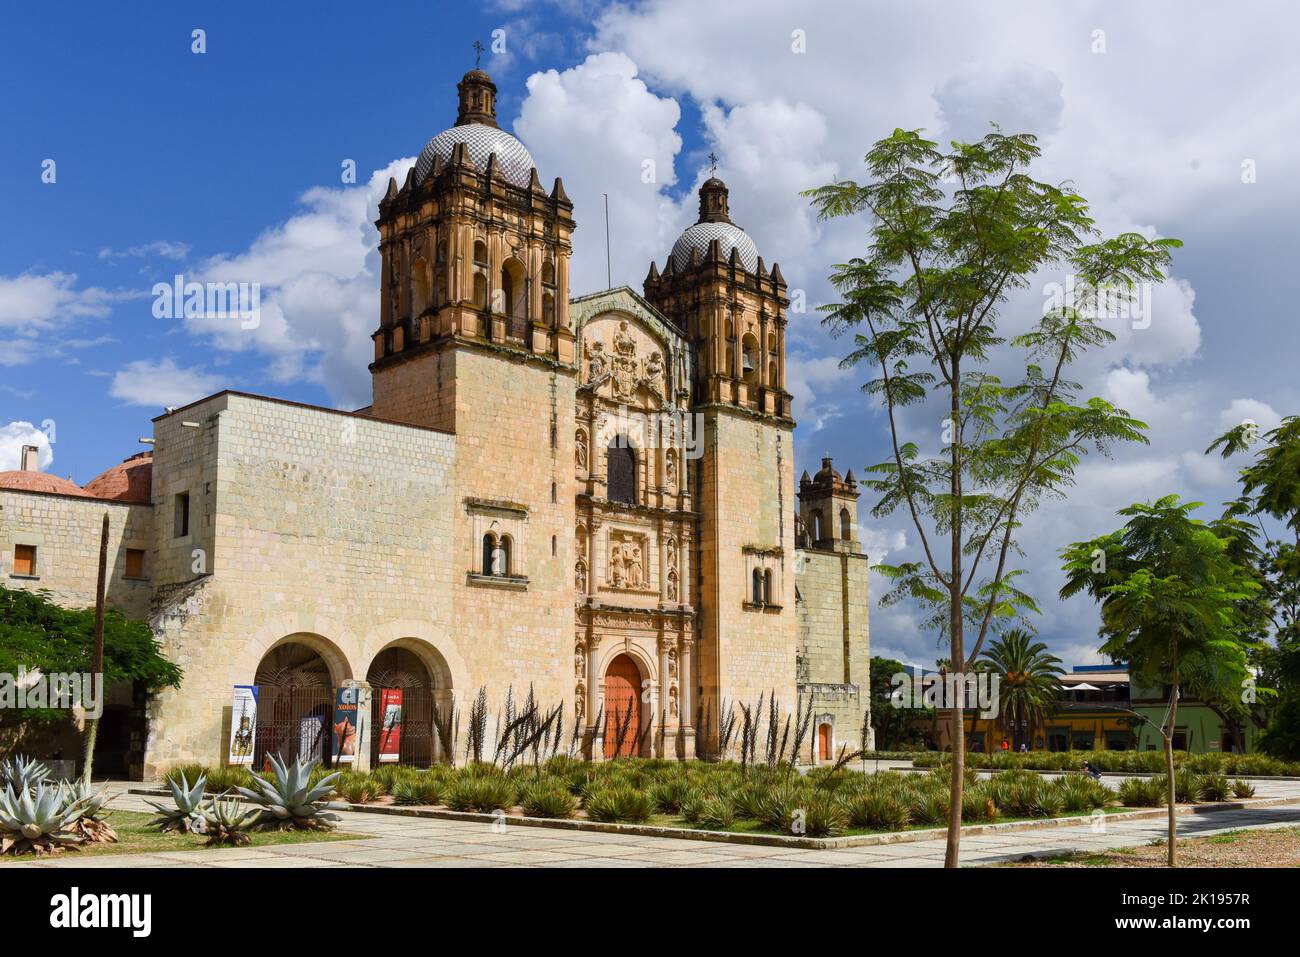 The Church and Convent of Santo Domingo de Guzmán in the historical center of Oaxaca, Mexico Stock Photo